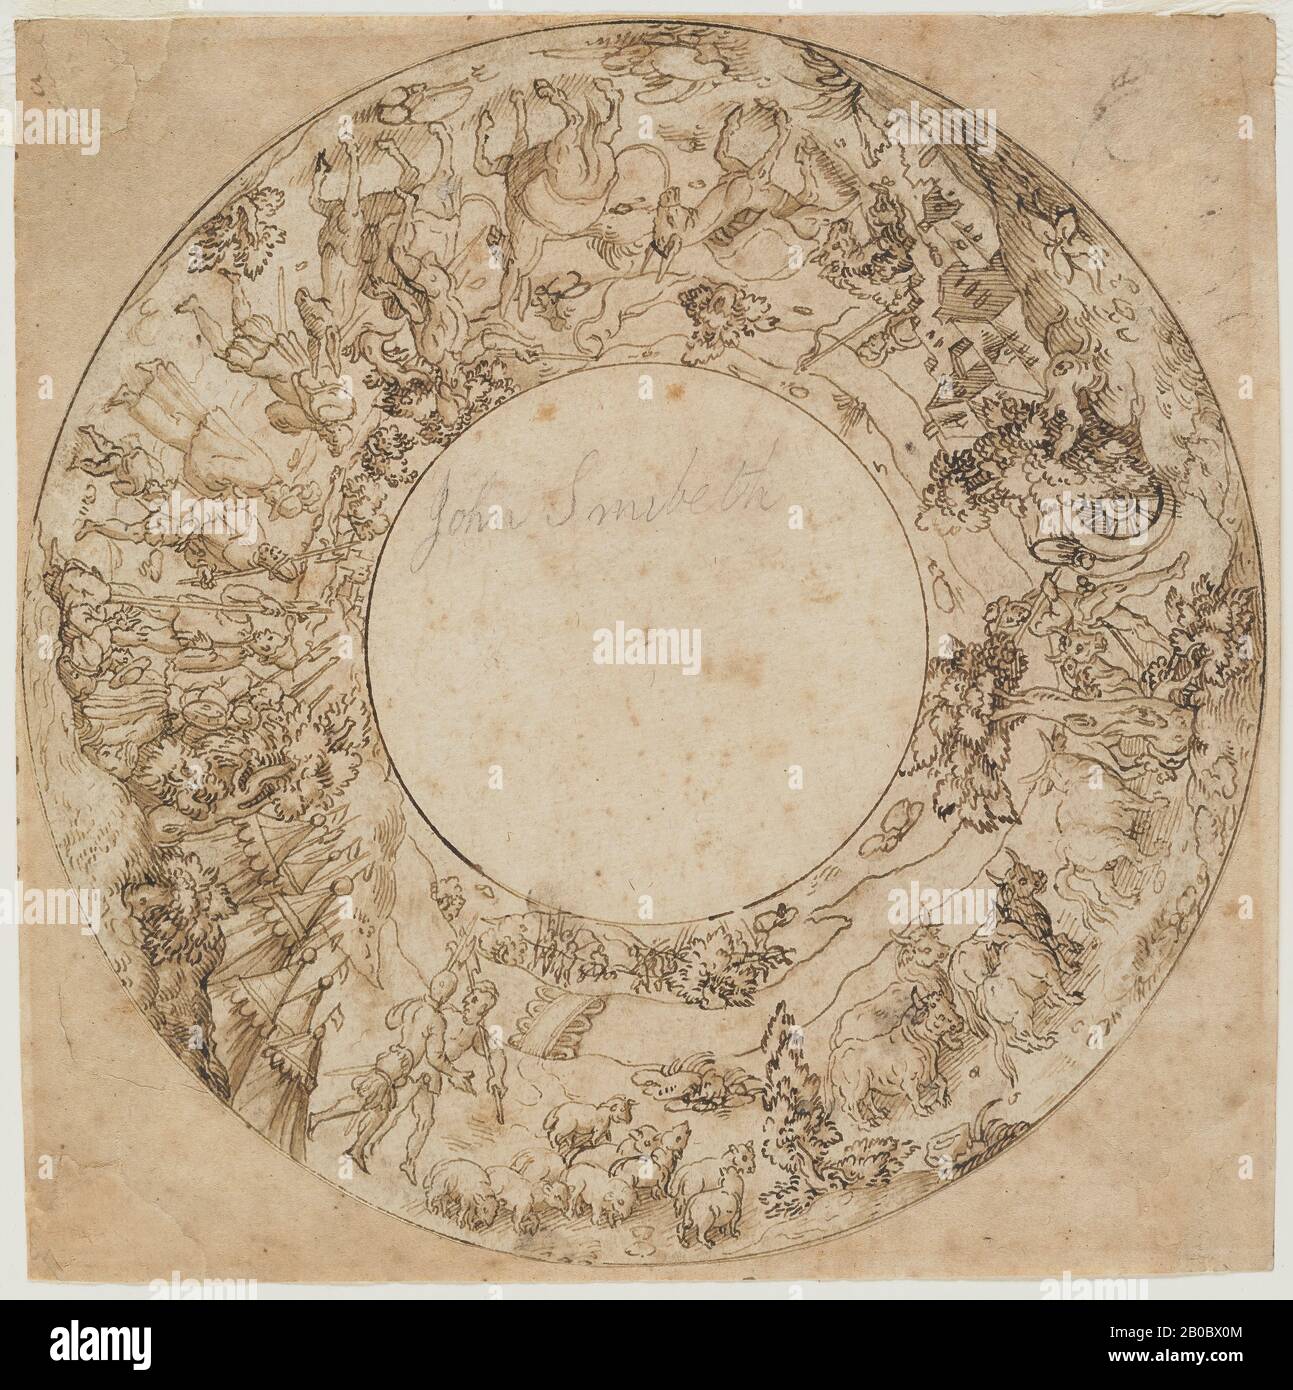 Artista sconosciuto, disegno per un piatto Circolare, 1500-1600, penna e  inchiostro marrone e lavaggio marrone su carta, 6 1/4 in. X 6 1/4 in.  (15,88 cm. X 15,88 cm.), questo foglio è